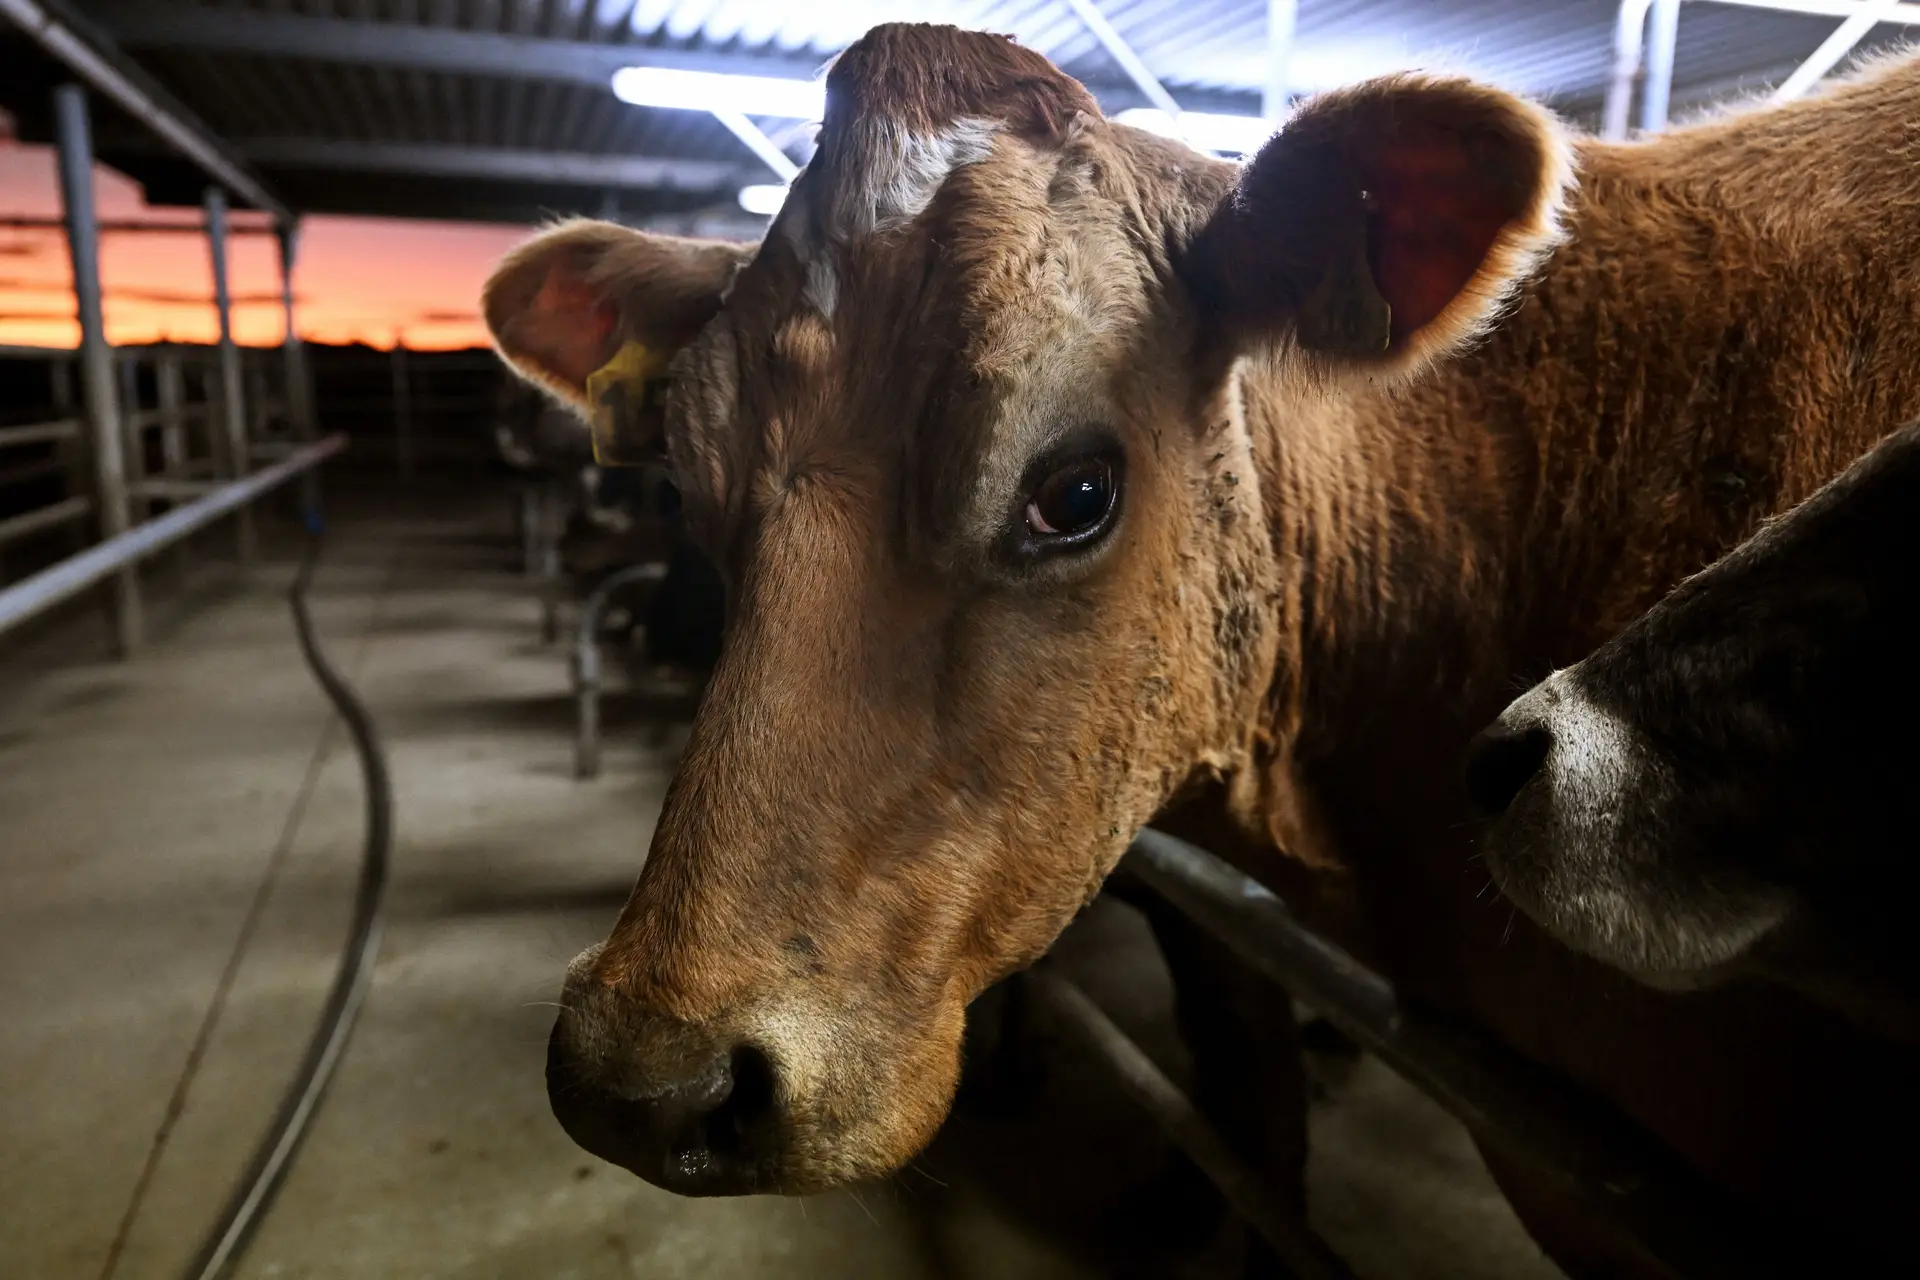 Na Nova Zelândia, quase metade das emissões do país provêm do setor agrícola